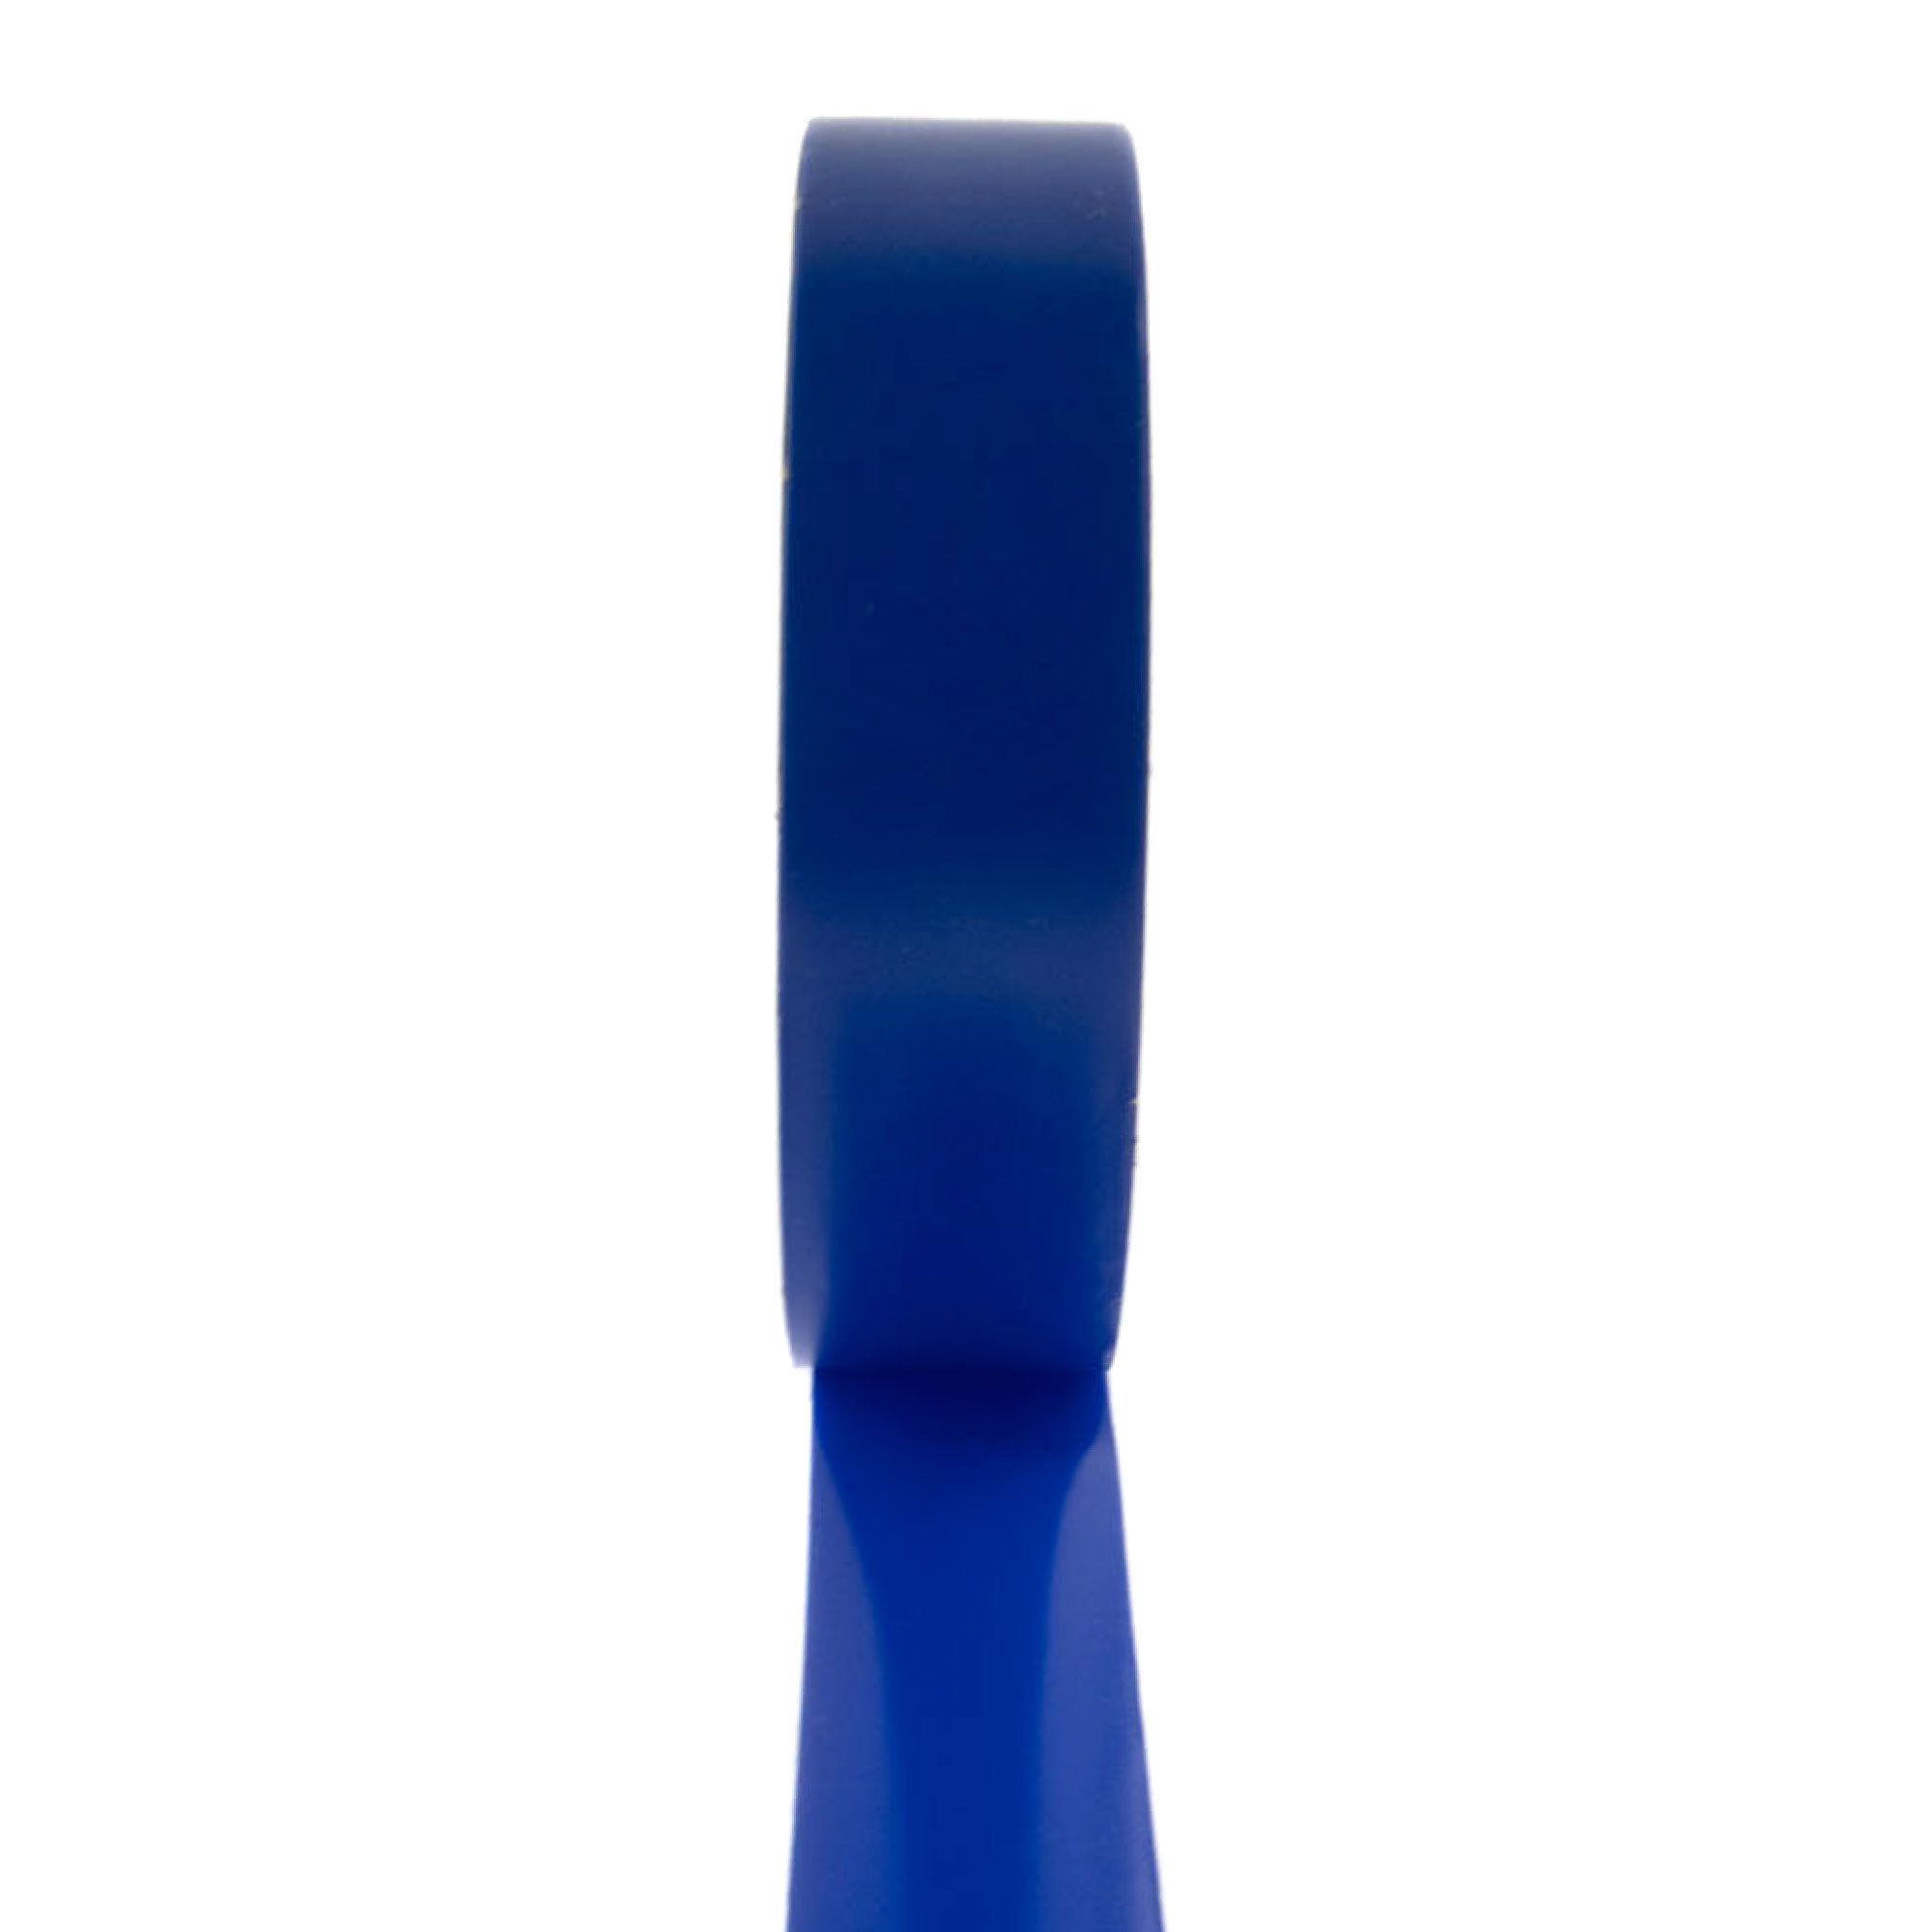 PVC Isolierband 19mm x 33m, blau